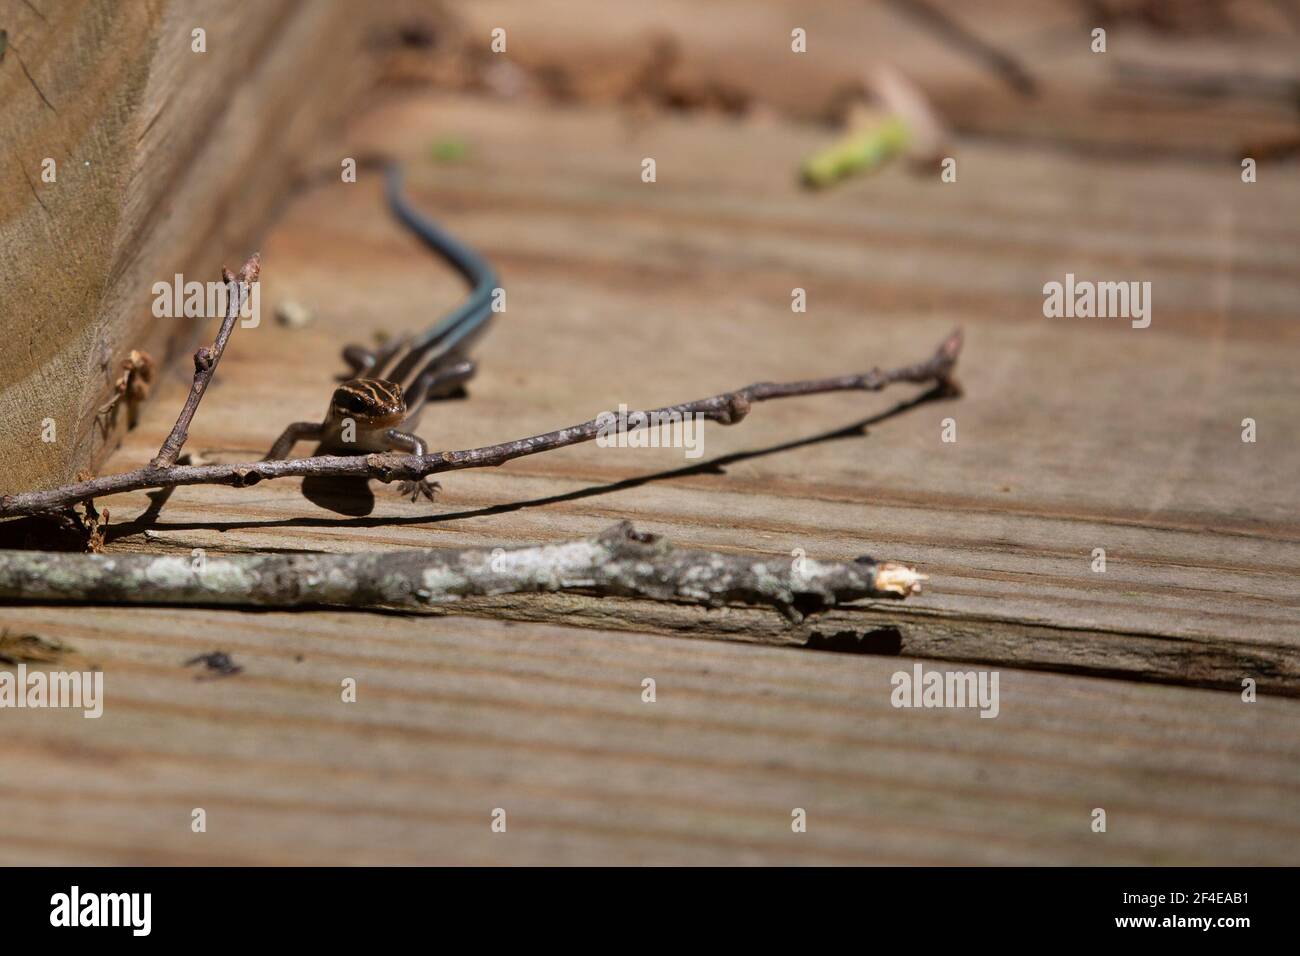 Juvenile five-lined skink (Plestiodon fasciatus) on a wooden boardwalk Stock Photo